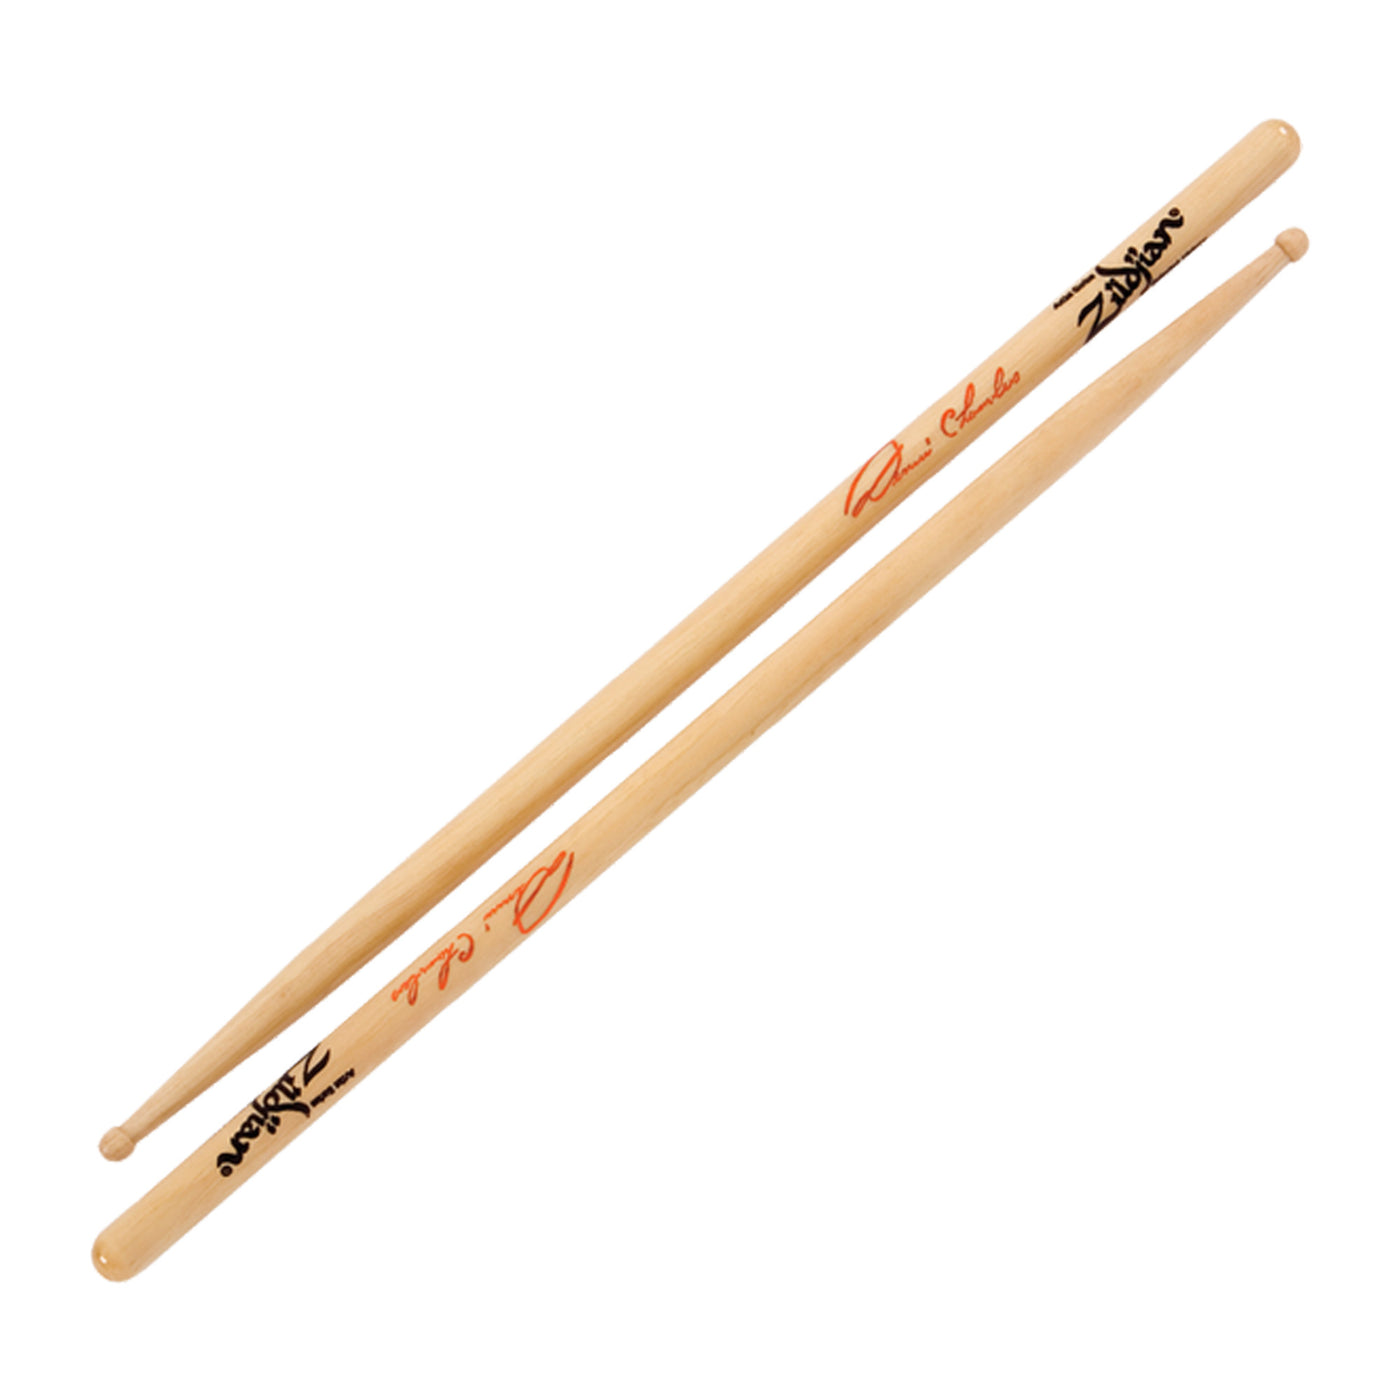 Zildjian Dennis Chambers Artist Series Drumsticks - Nylon Tip